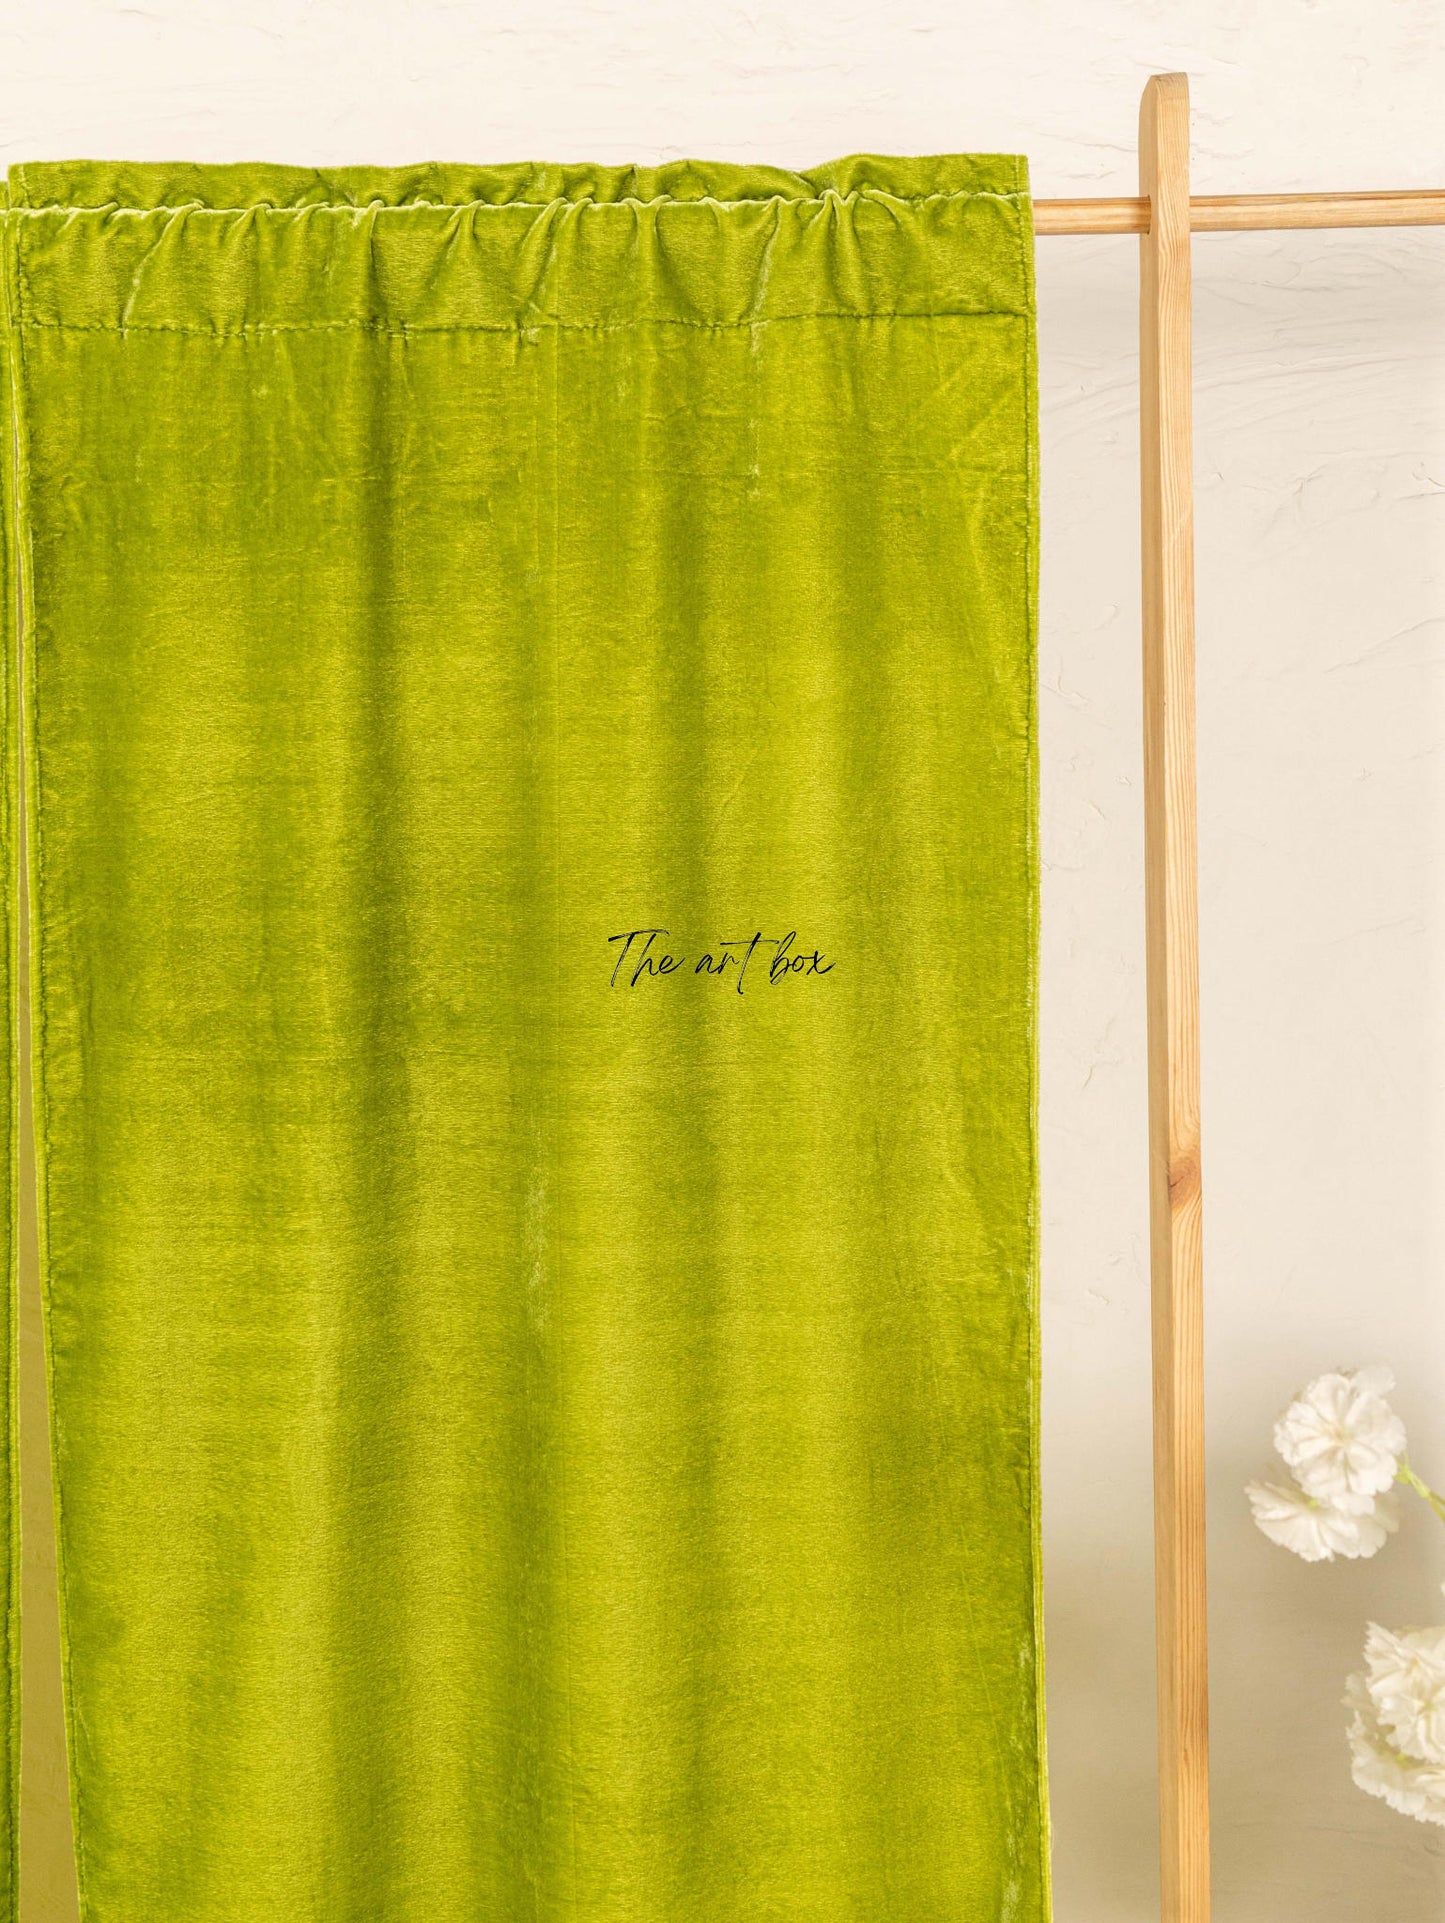 Parrot Green Velvet Curtains - 2 panel set